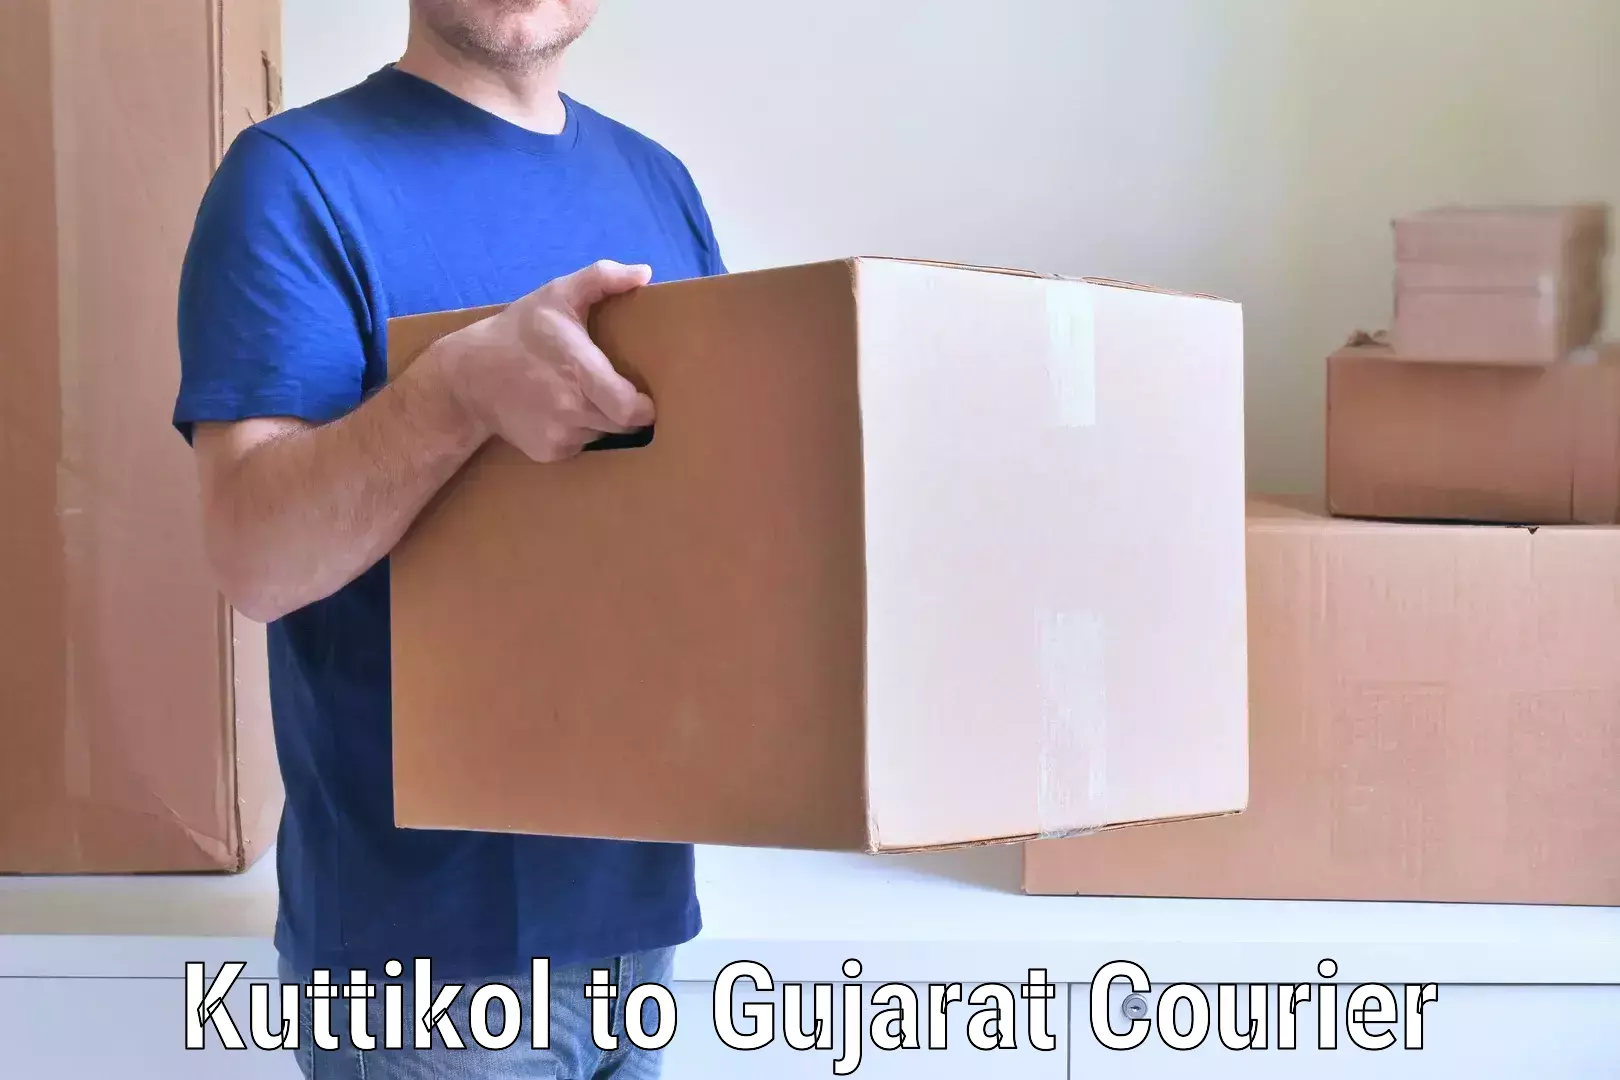 Trusted household movers Kuttikol to IIIT Surat